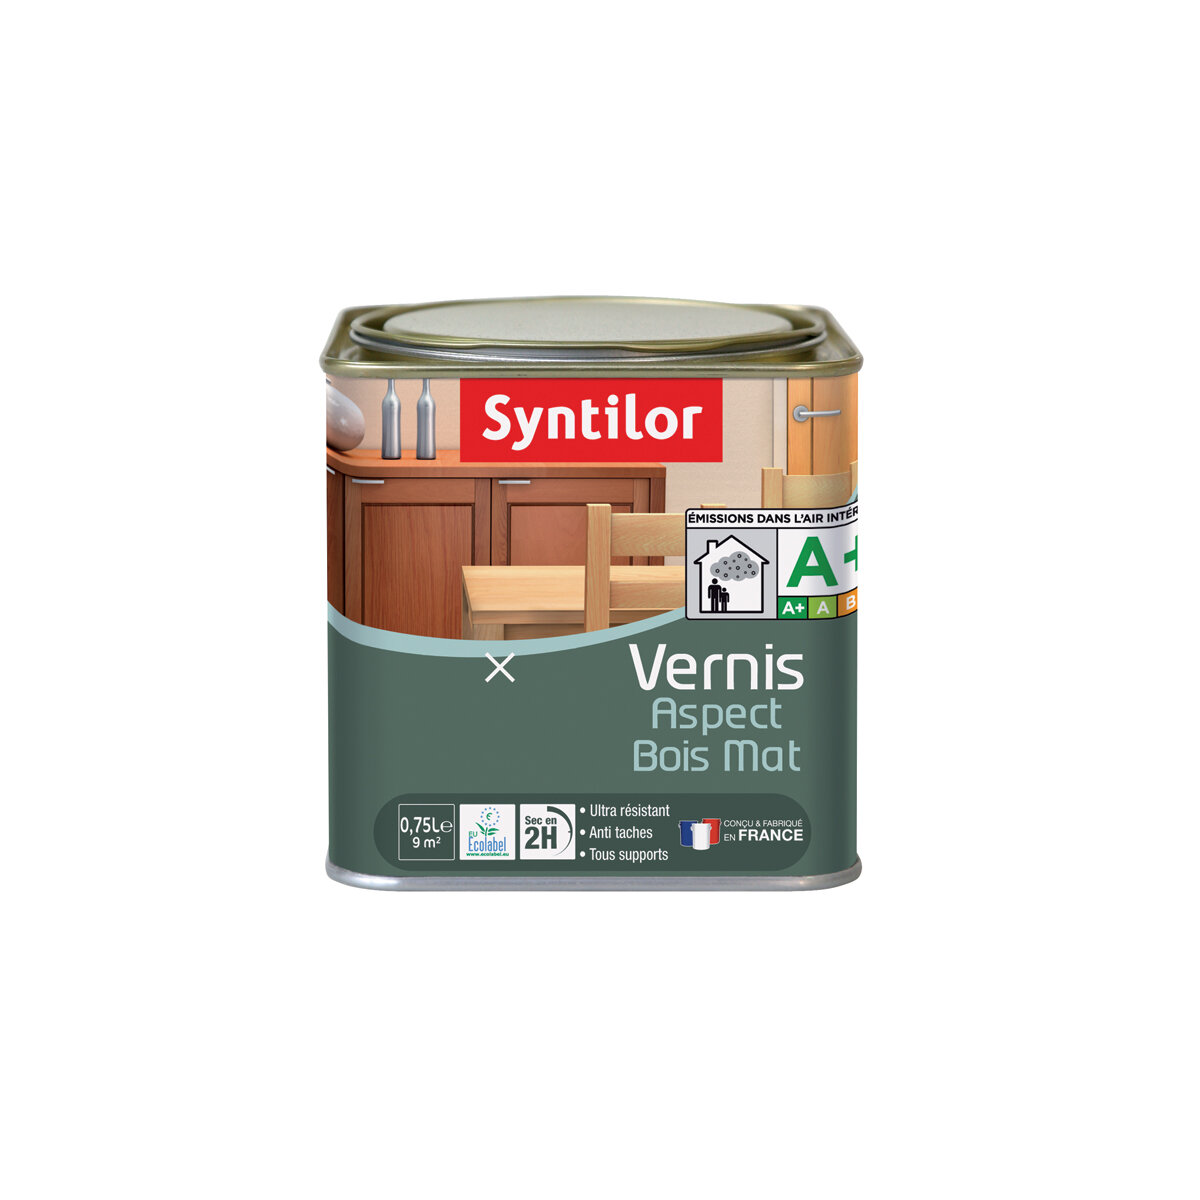 Syntilor - Vernice incolore per mobili e oggetti, 0,75L